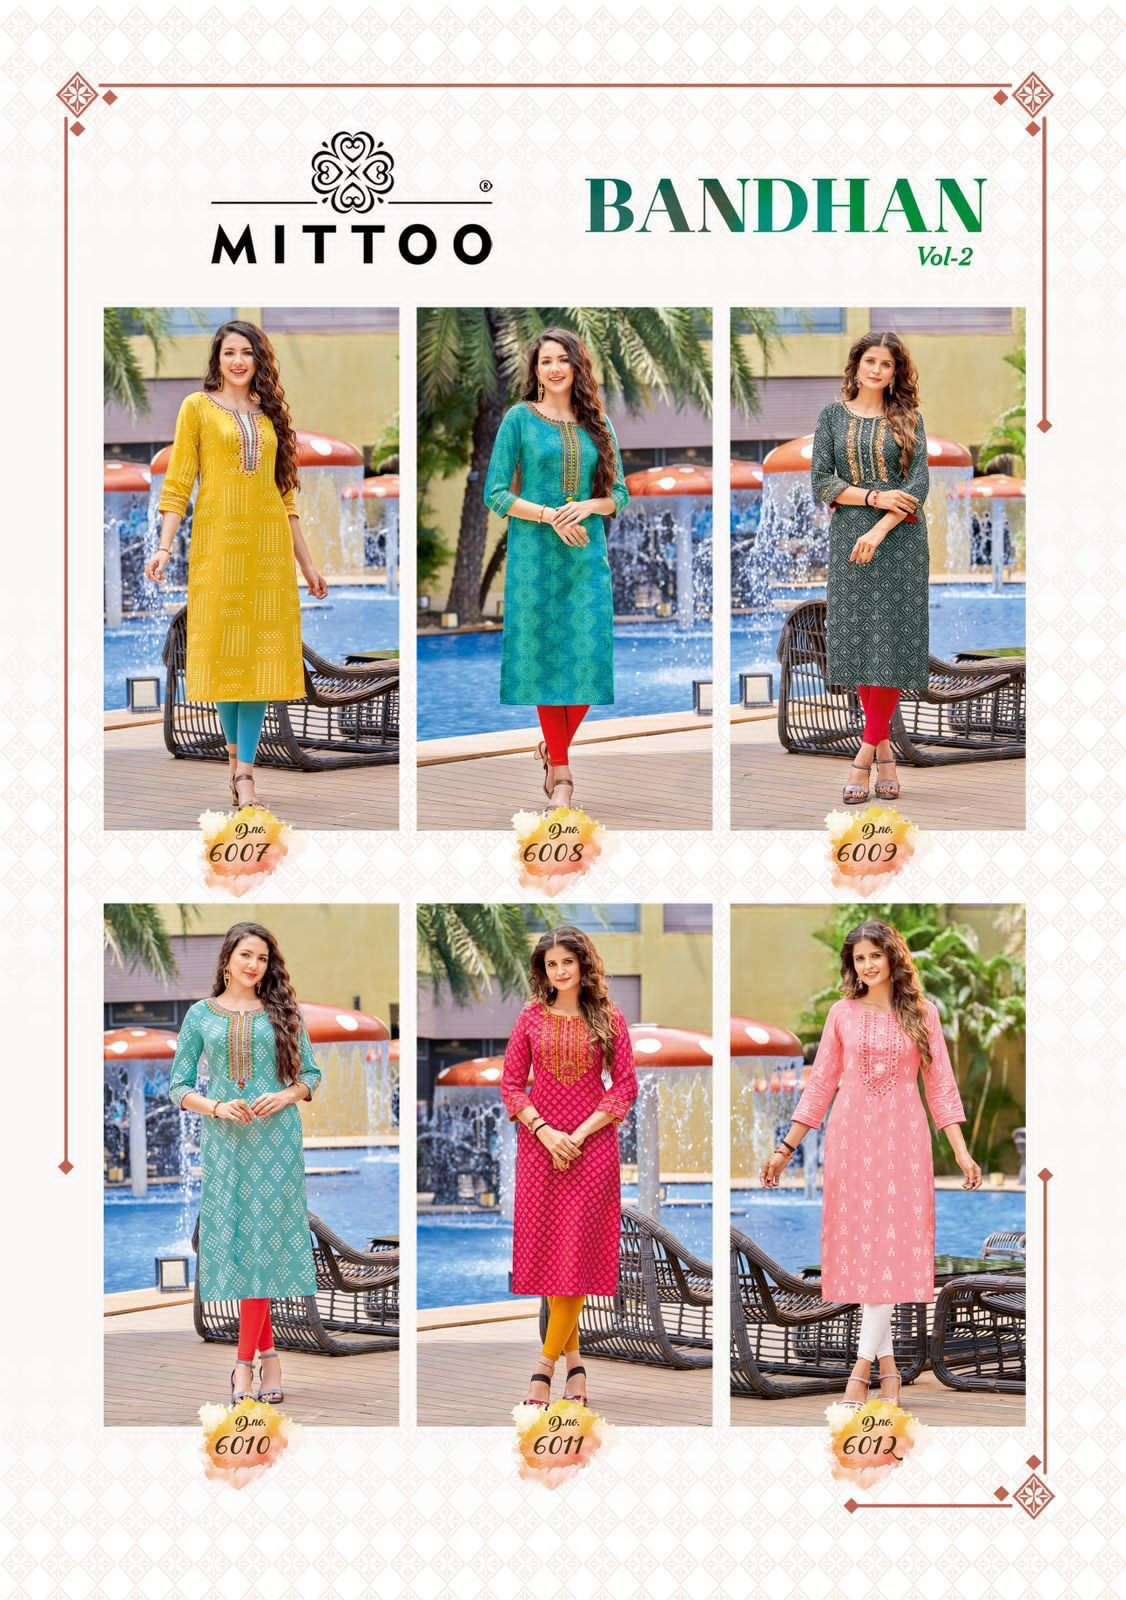 mittoo bandhan vol-2 6007-6012 series reyon designer hand work kurti online seller wholesale price surat 